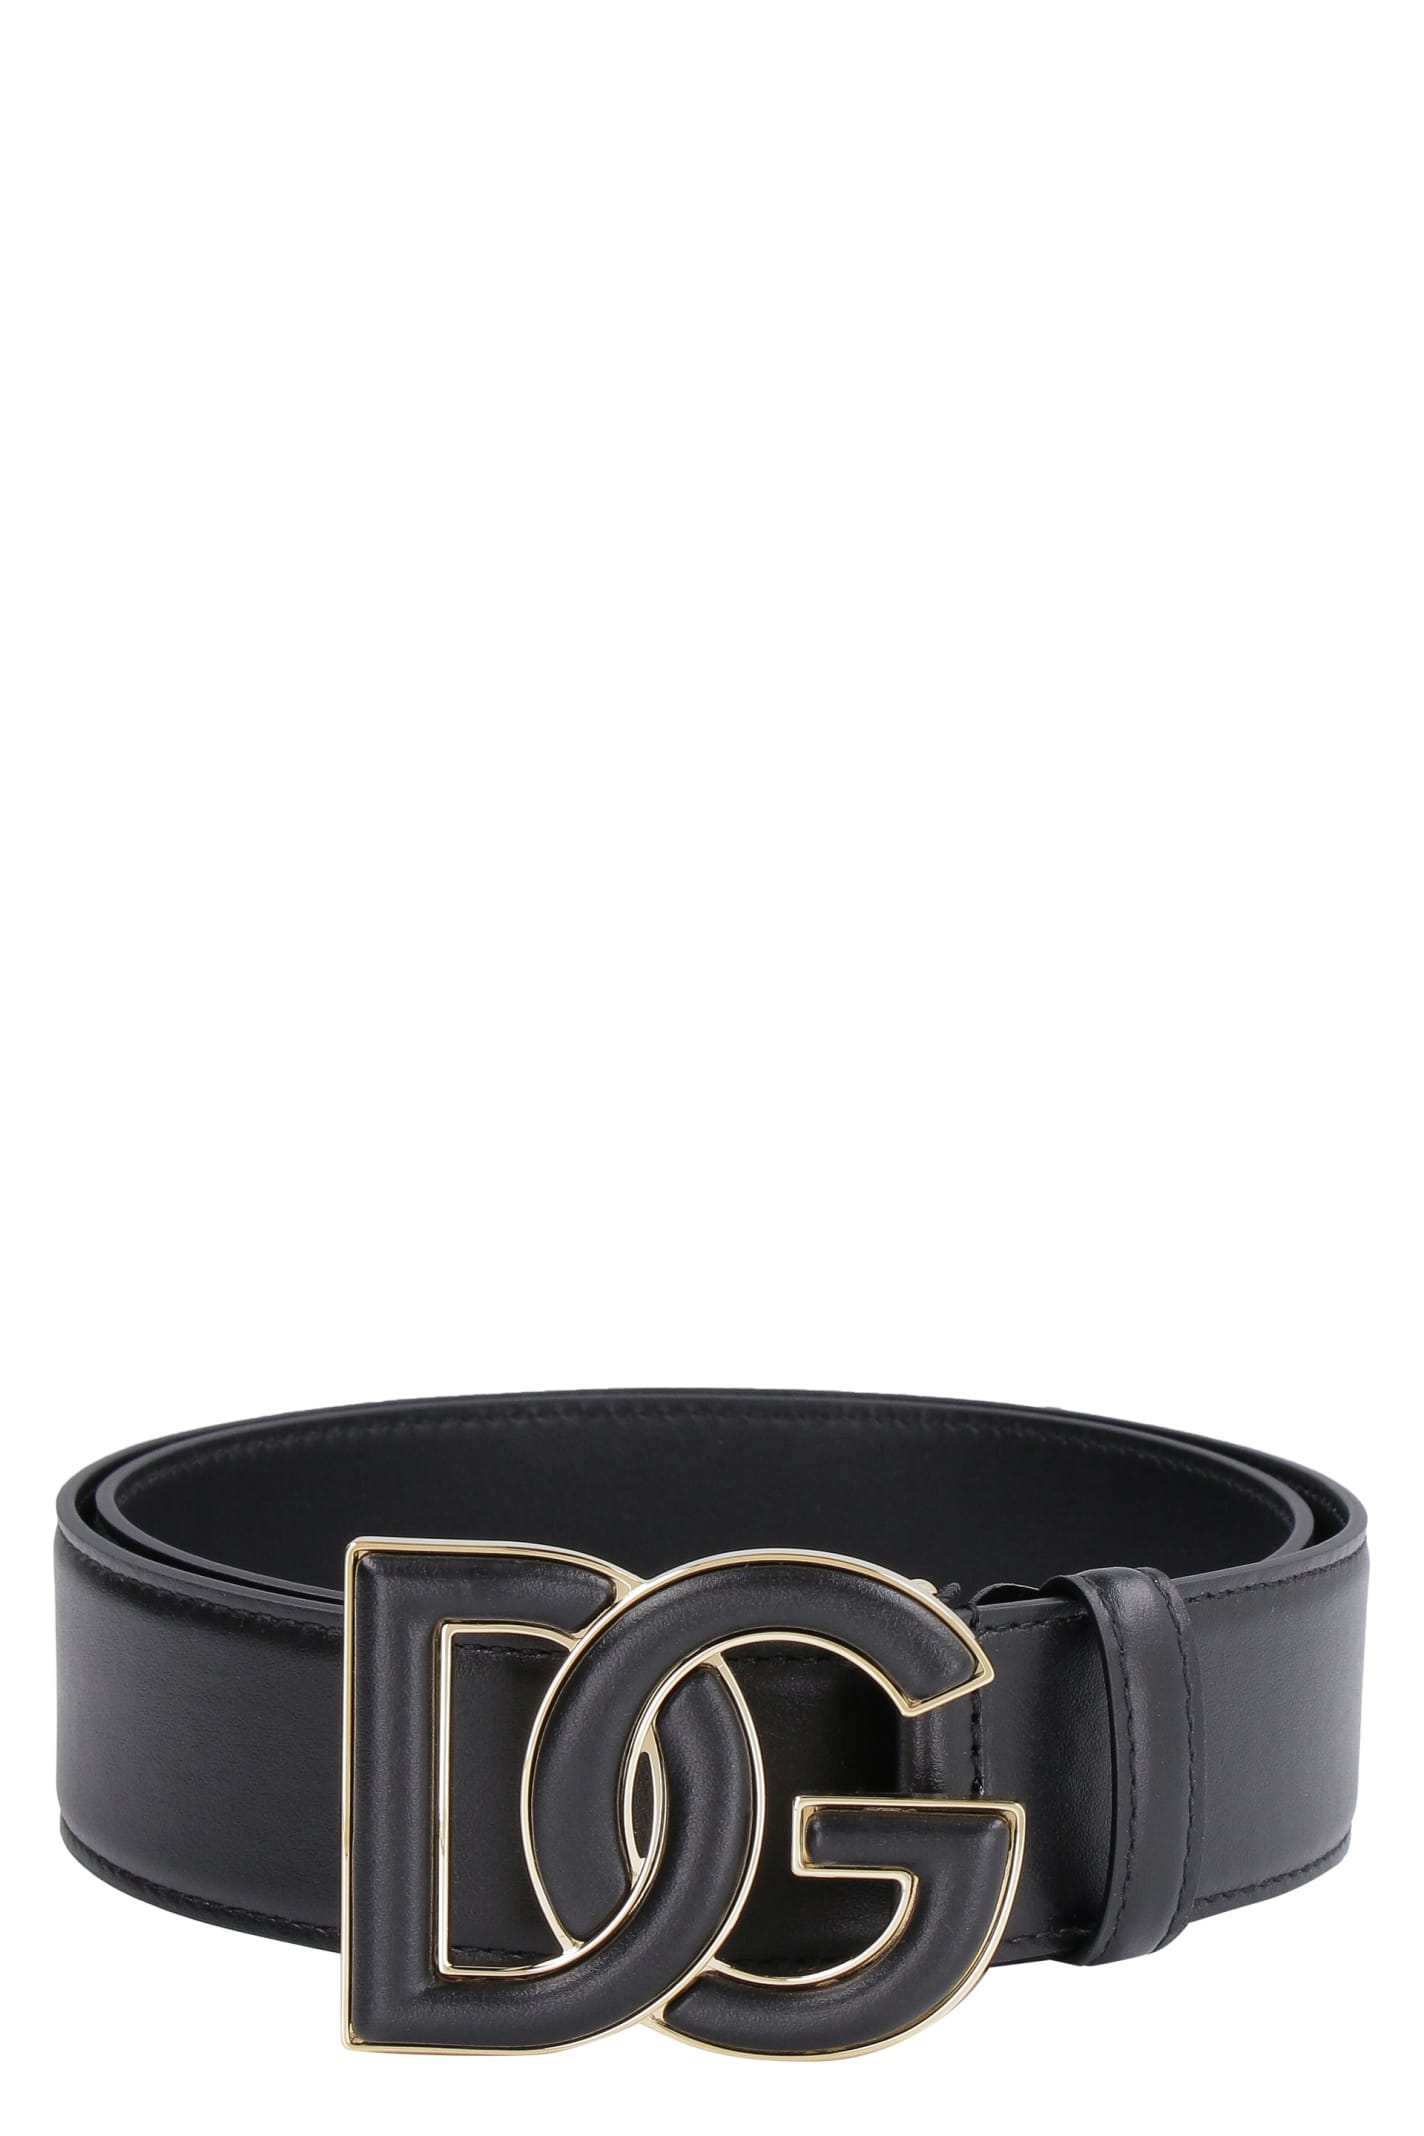 Dolce & Gabbana Dg Buckle Leather Belt